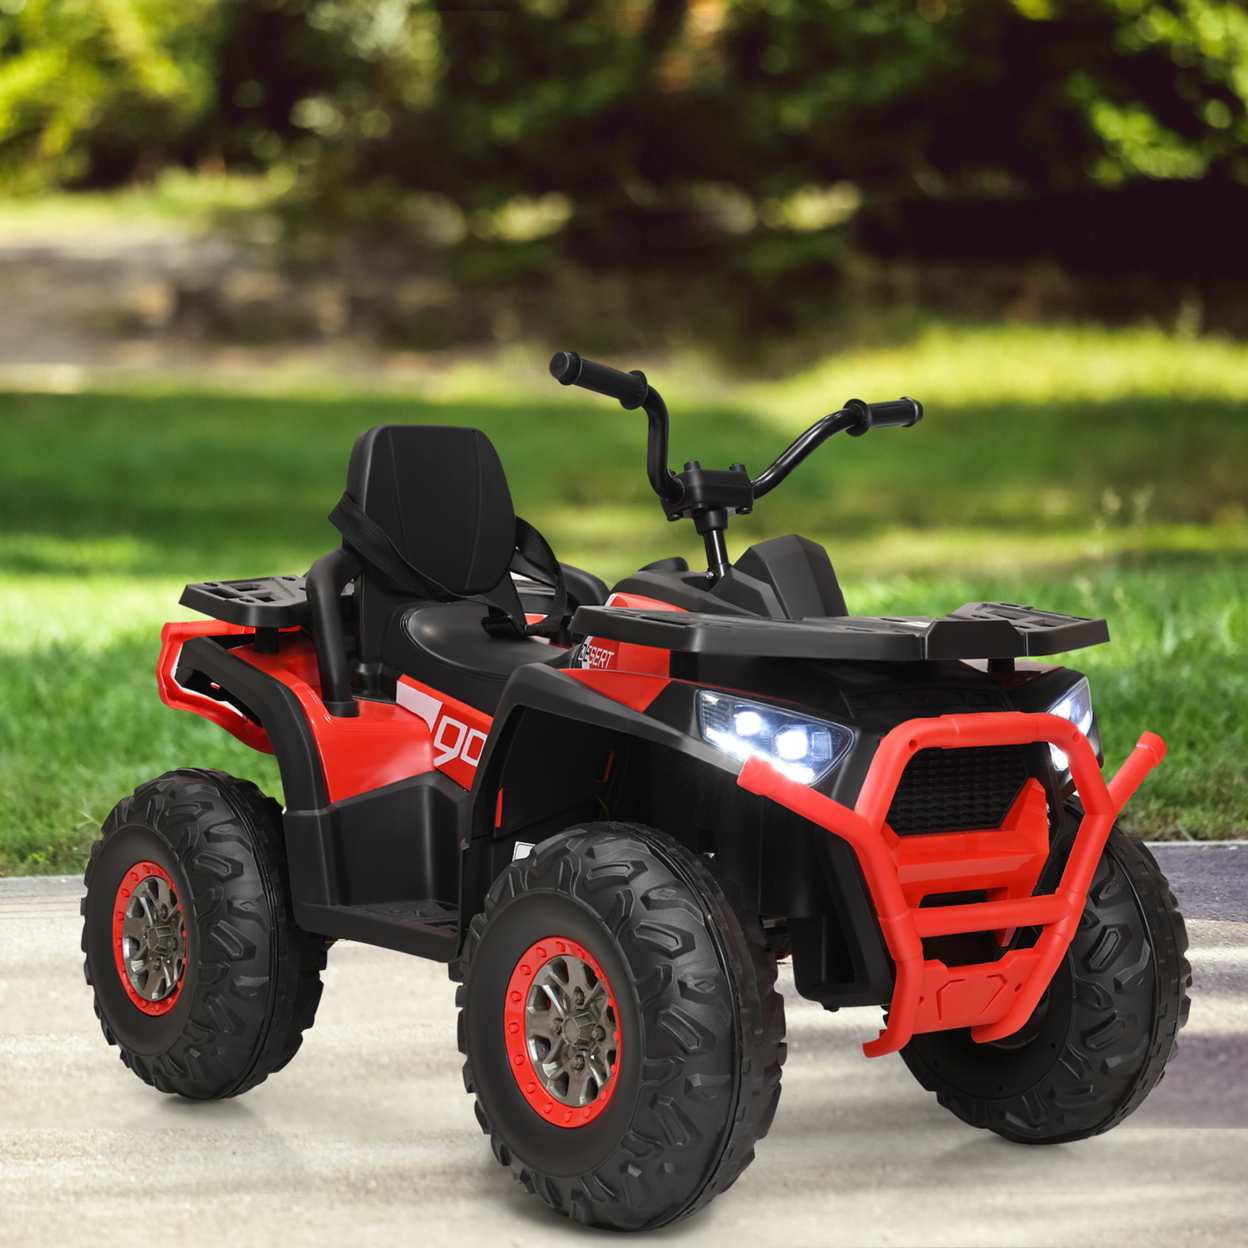 12V Electric Kids Ride On Car ATV 4-Wheeler Quad W/ LED Light Black/Red/White - Red